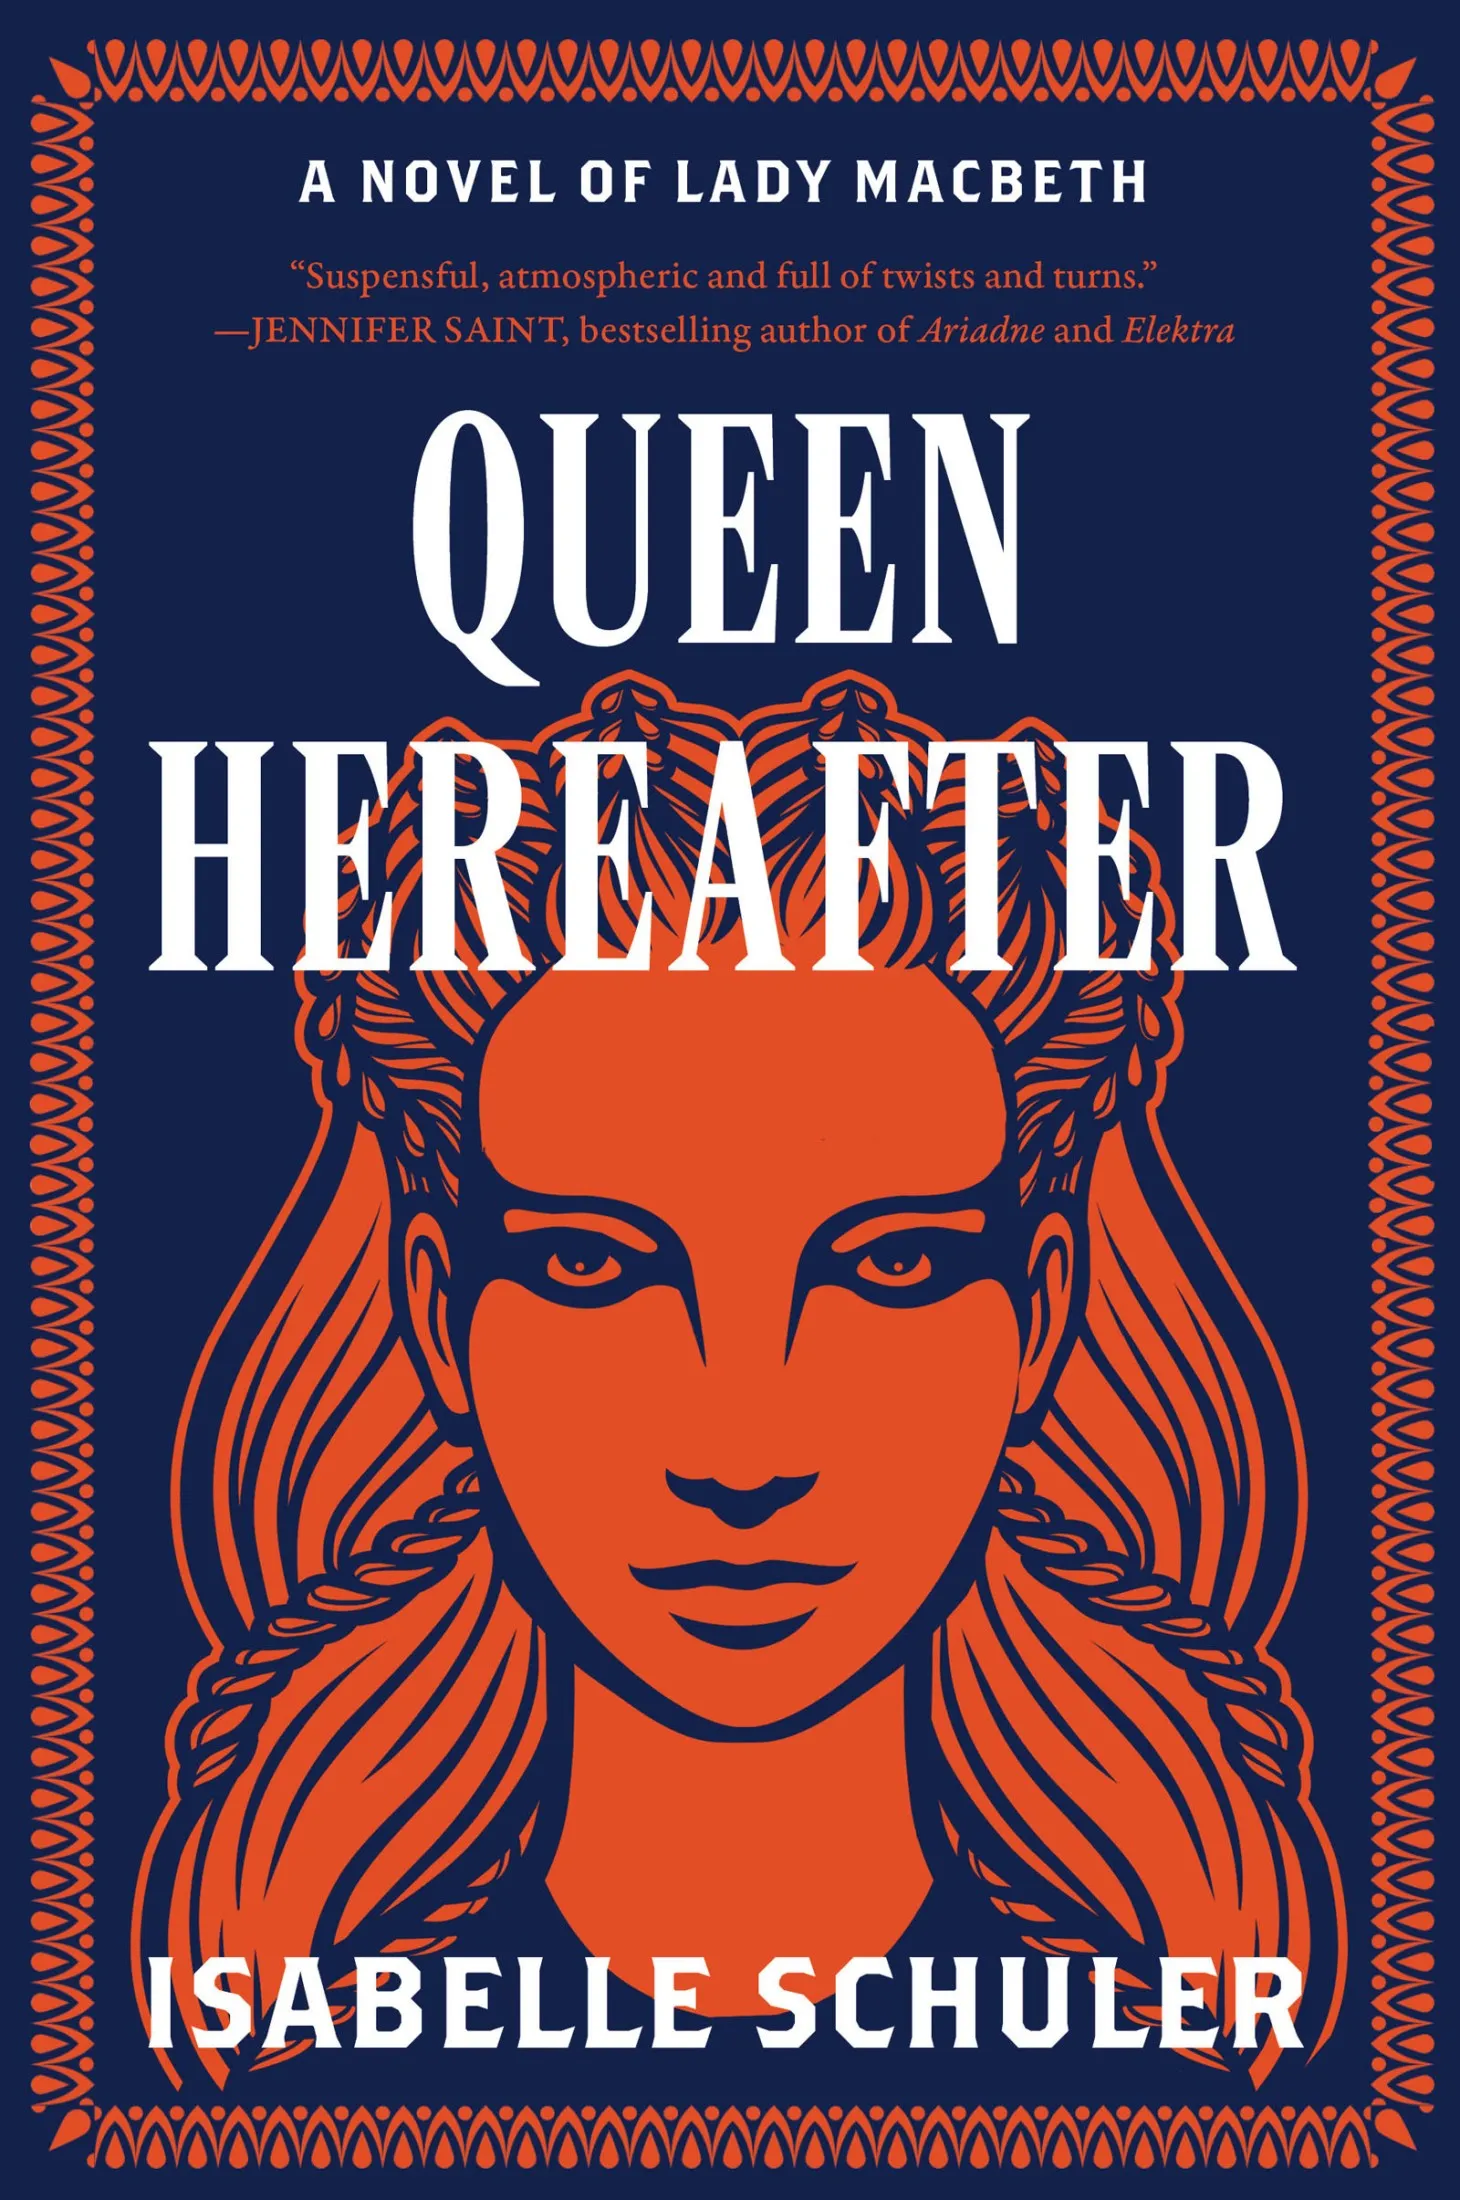 Queen Hereafter